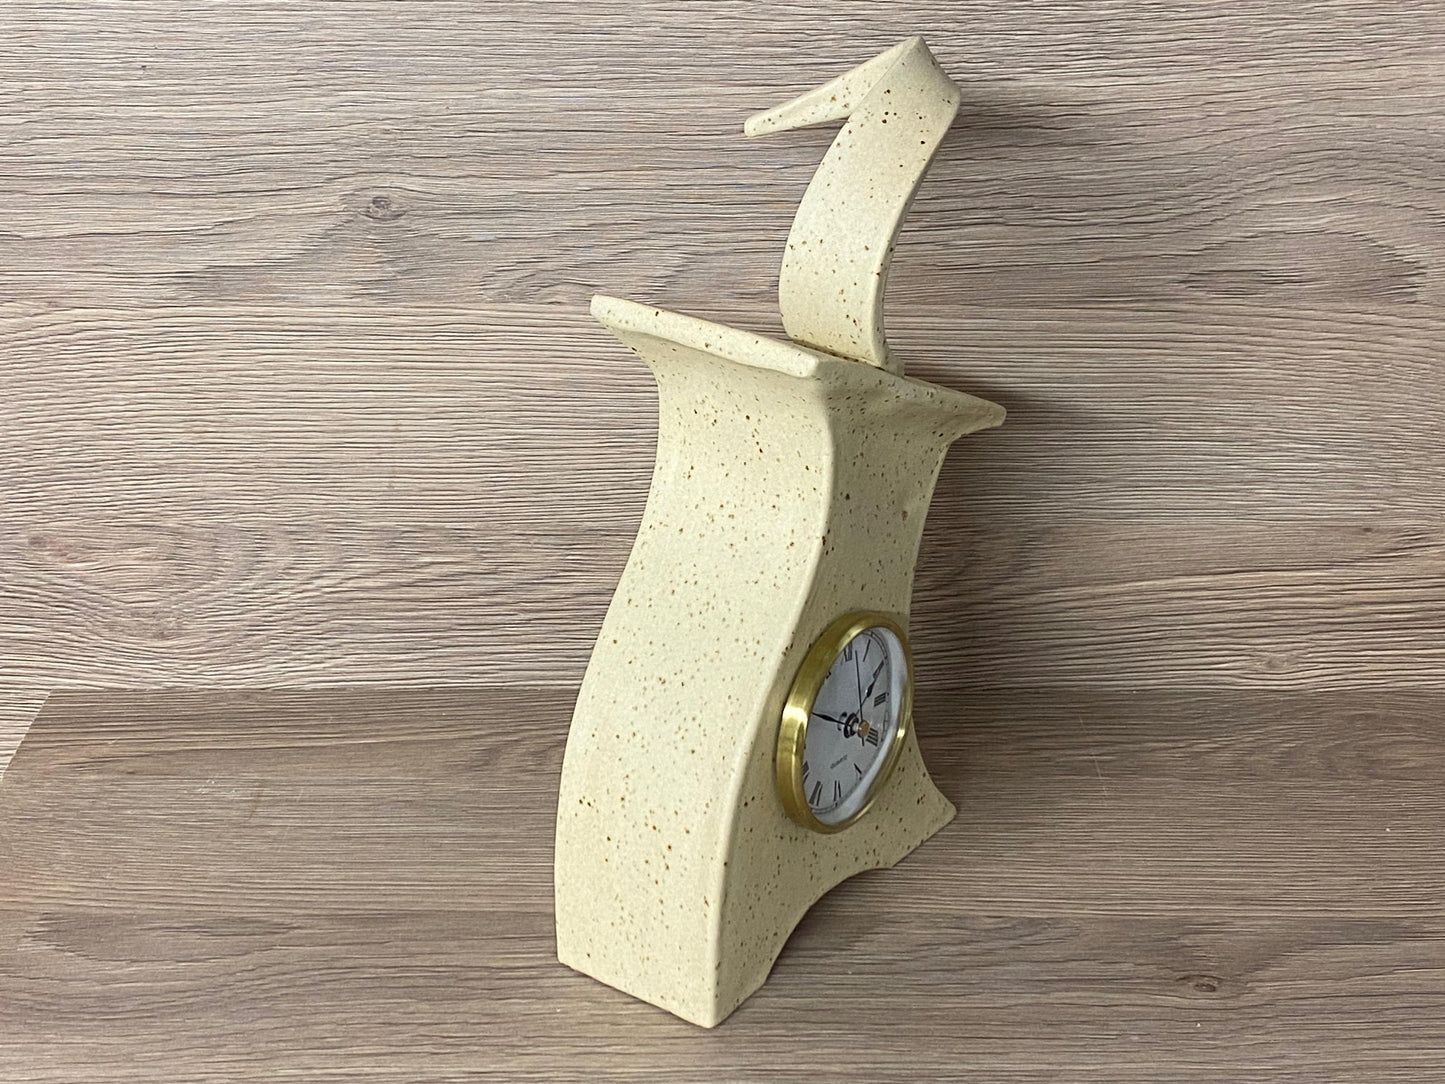 Ceramic Mantel Clock with Enclosed Face